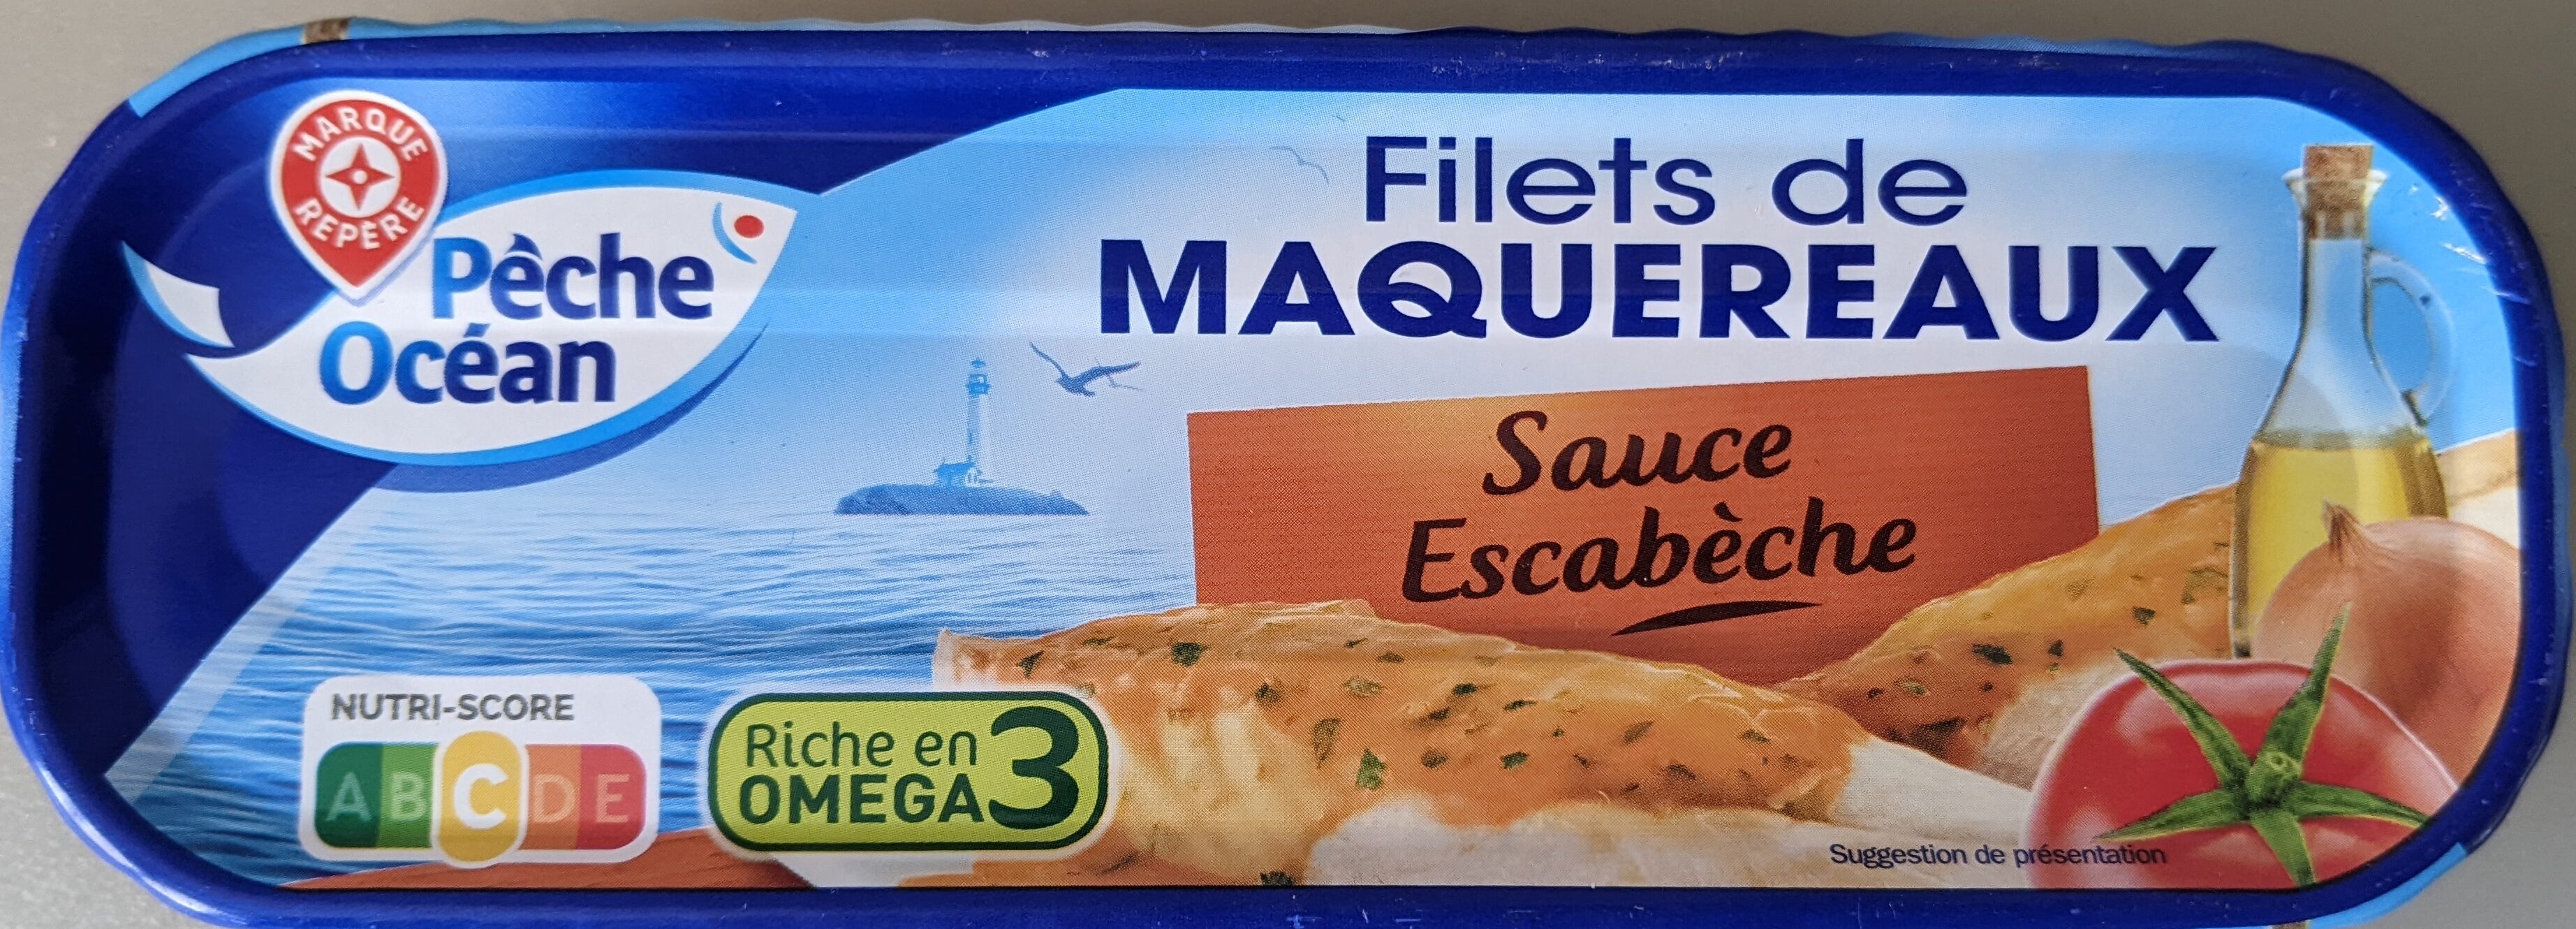 Filets de Maquereaux (Sauce Escabèche) - Product - fr